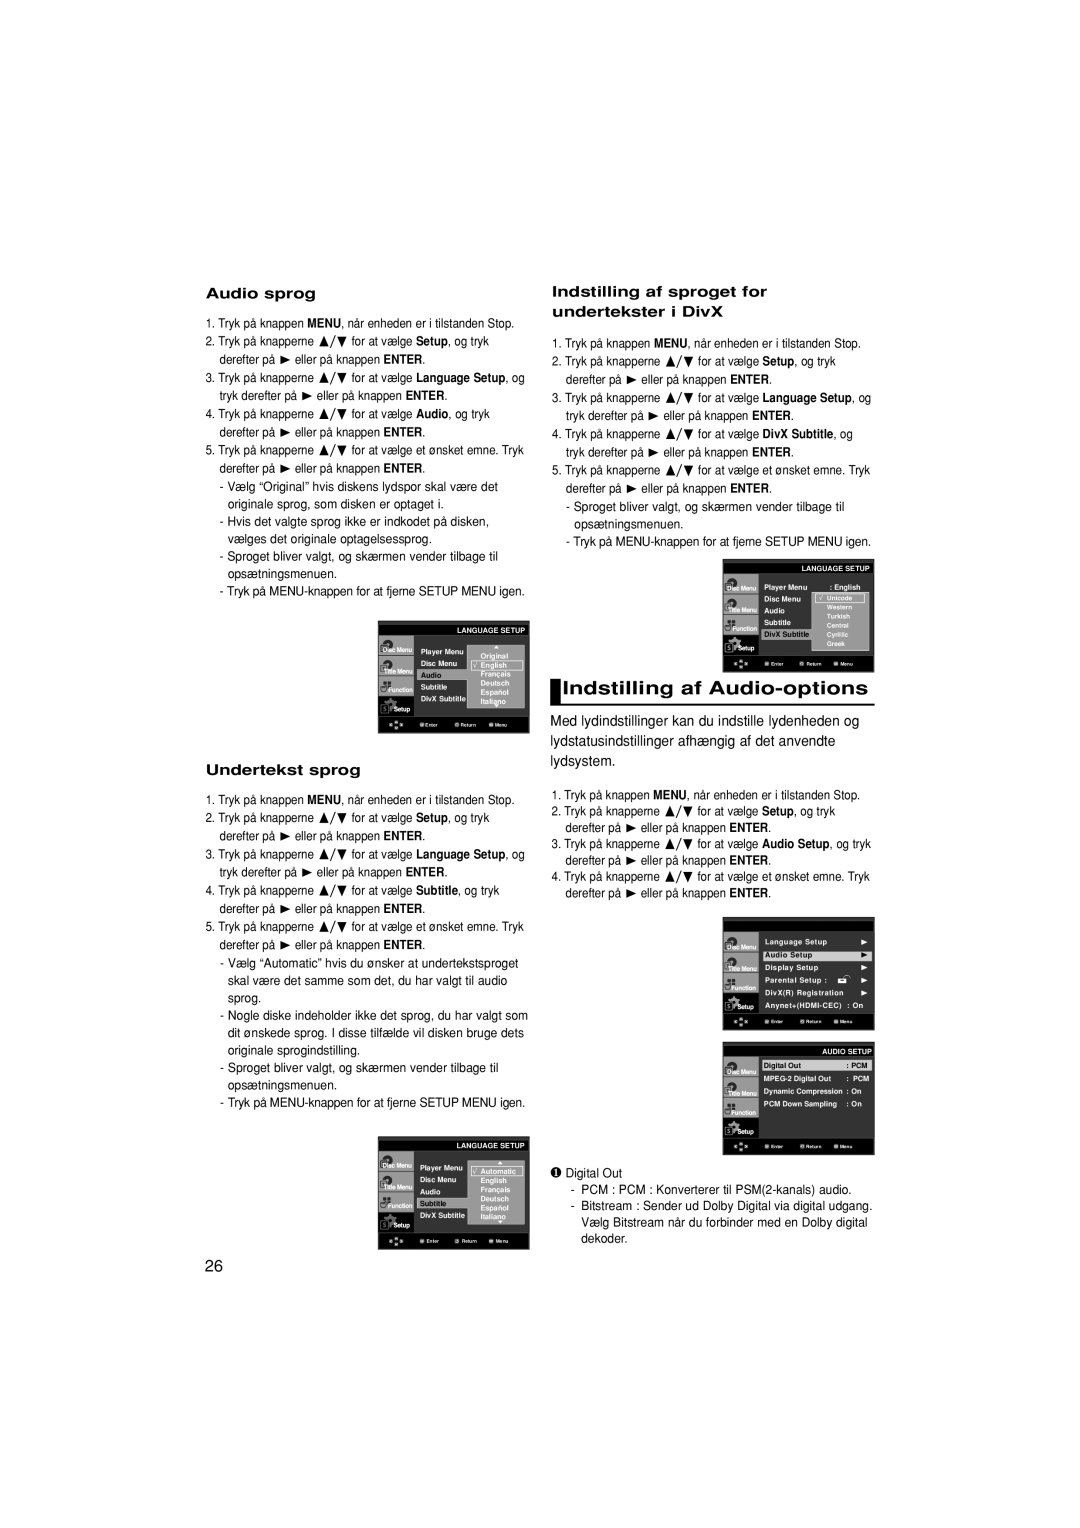 Samsung DVD-F1080/XEE, DVD-F1080W/XEE manual Indstilling af Audio-options, Audio sprog, Undertekst sprog 